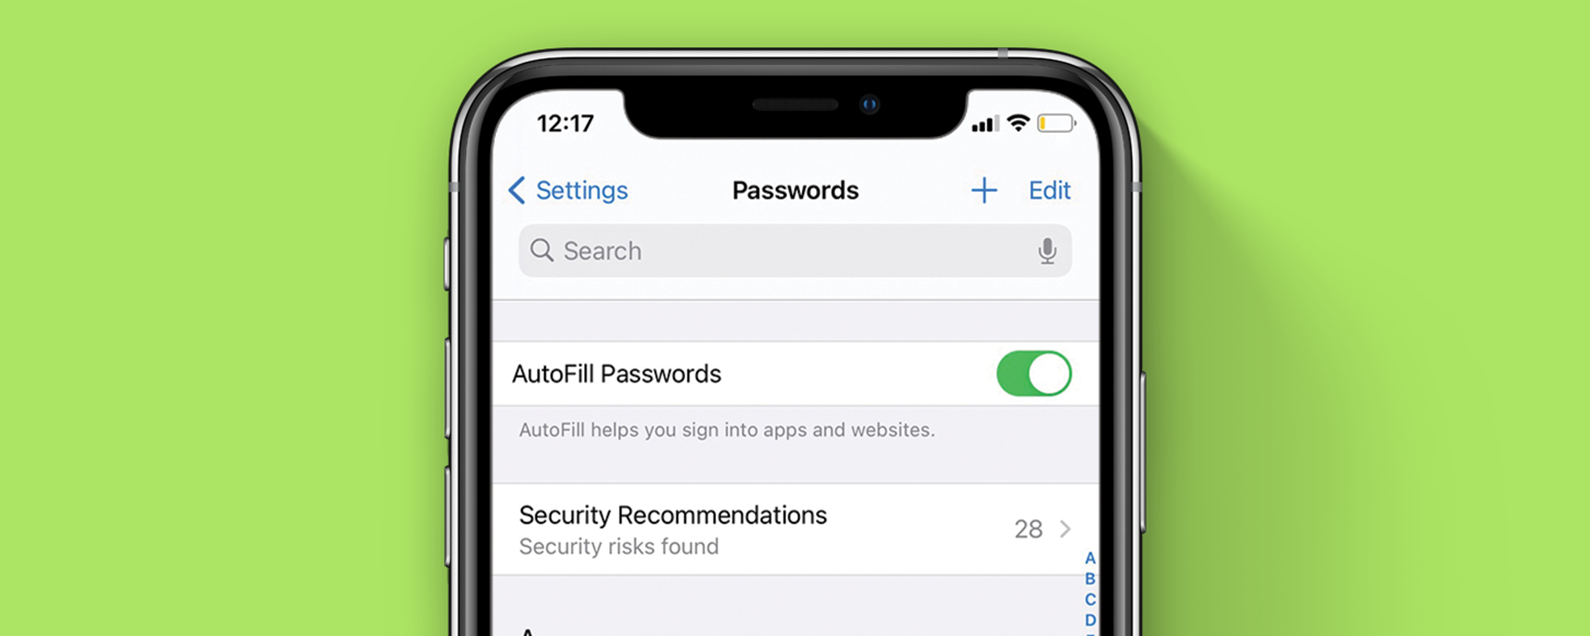 correct an apple security breach ios crash in an ipad